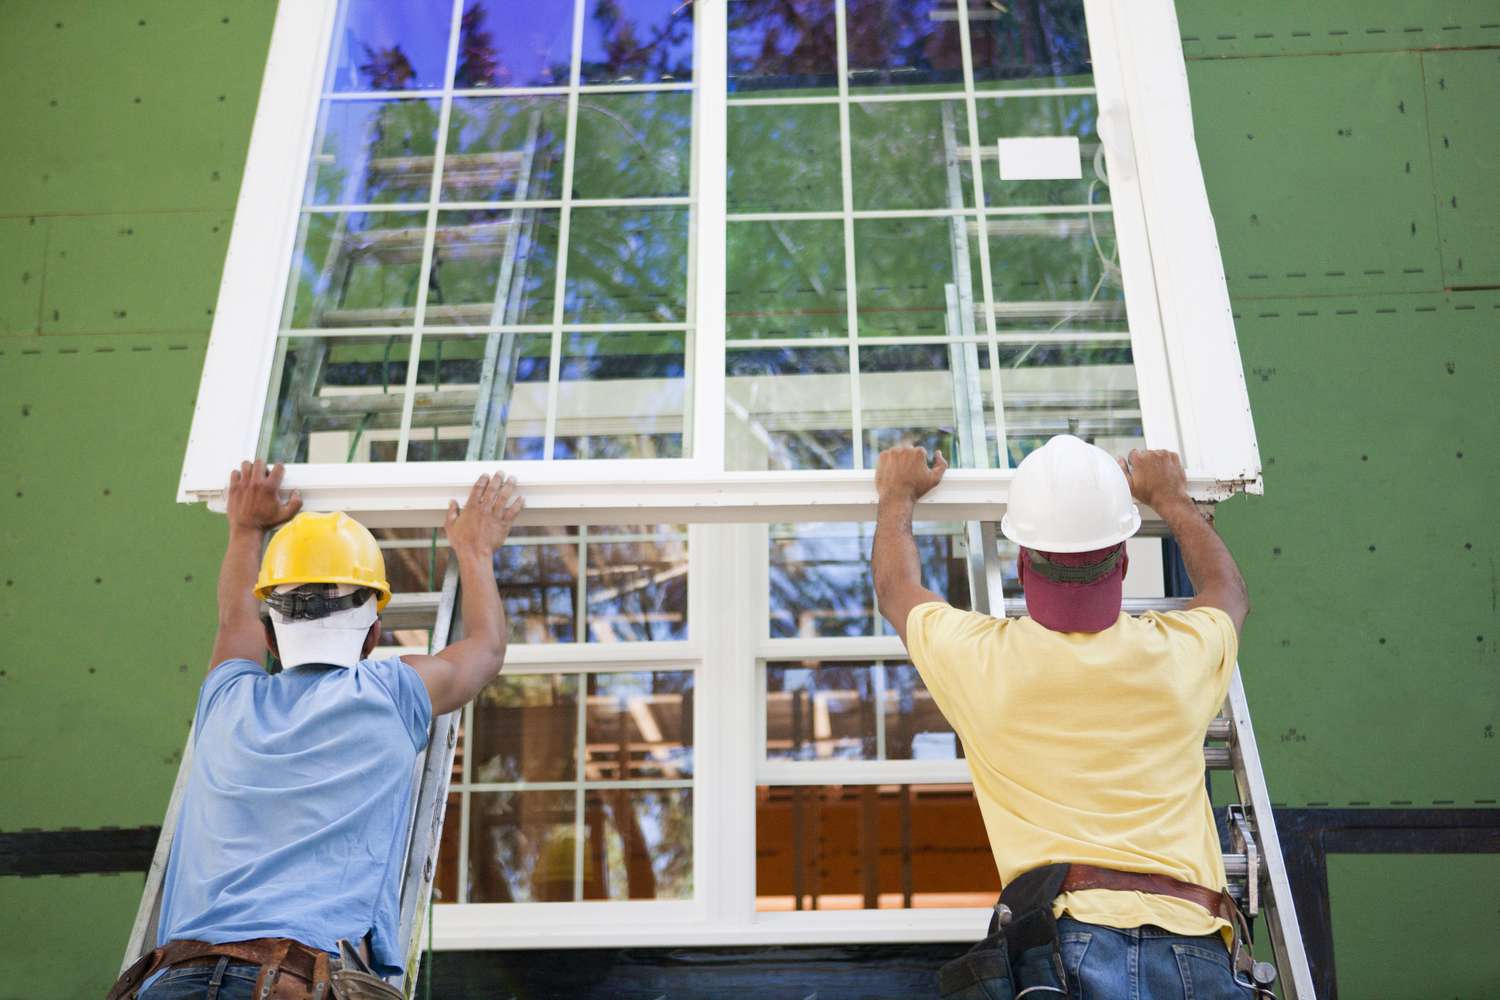 Les nouvelles fenêtres sont-elles rentables en termes d’économies d’énergie ?